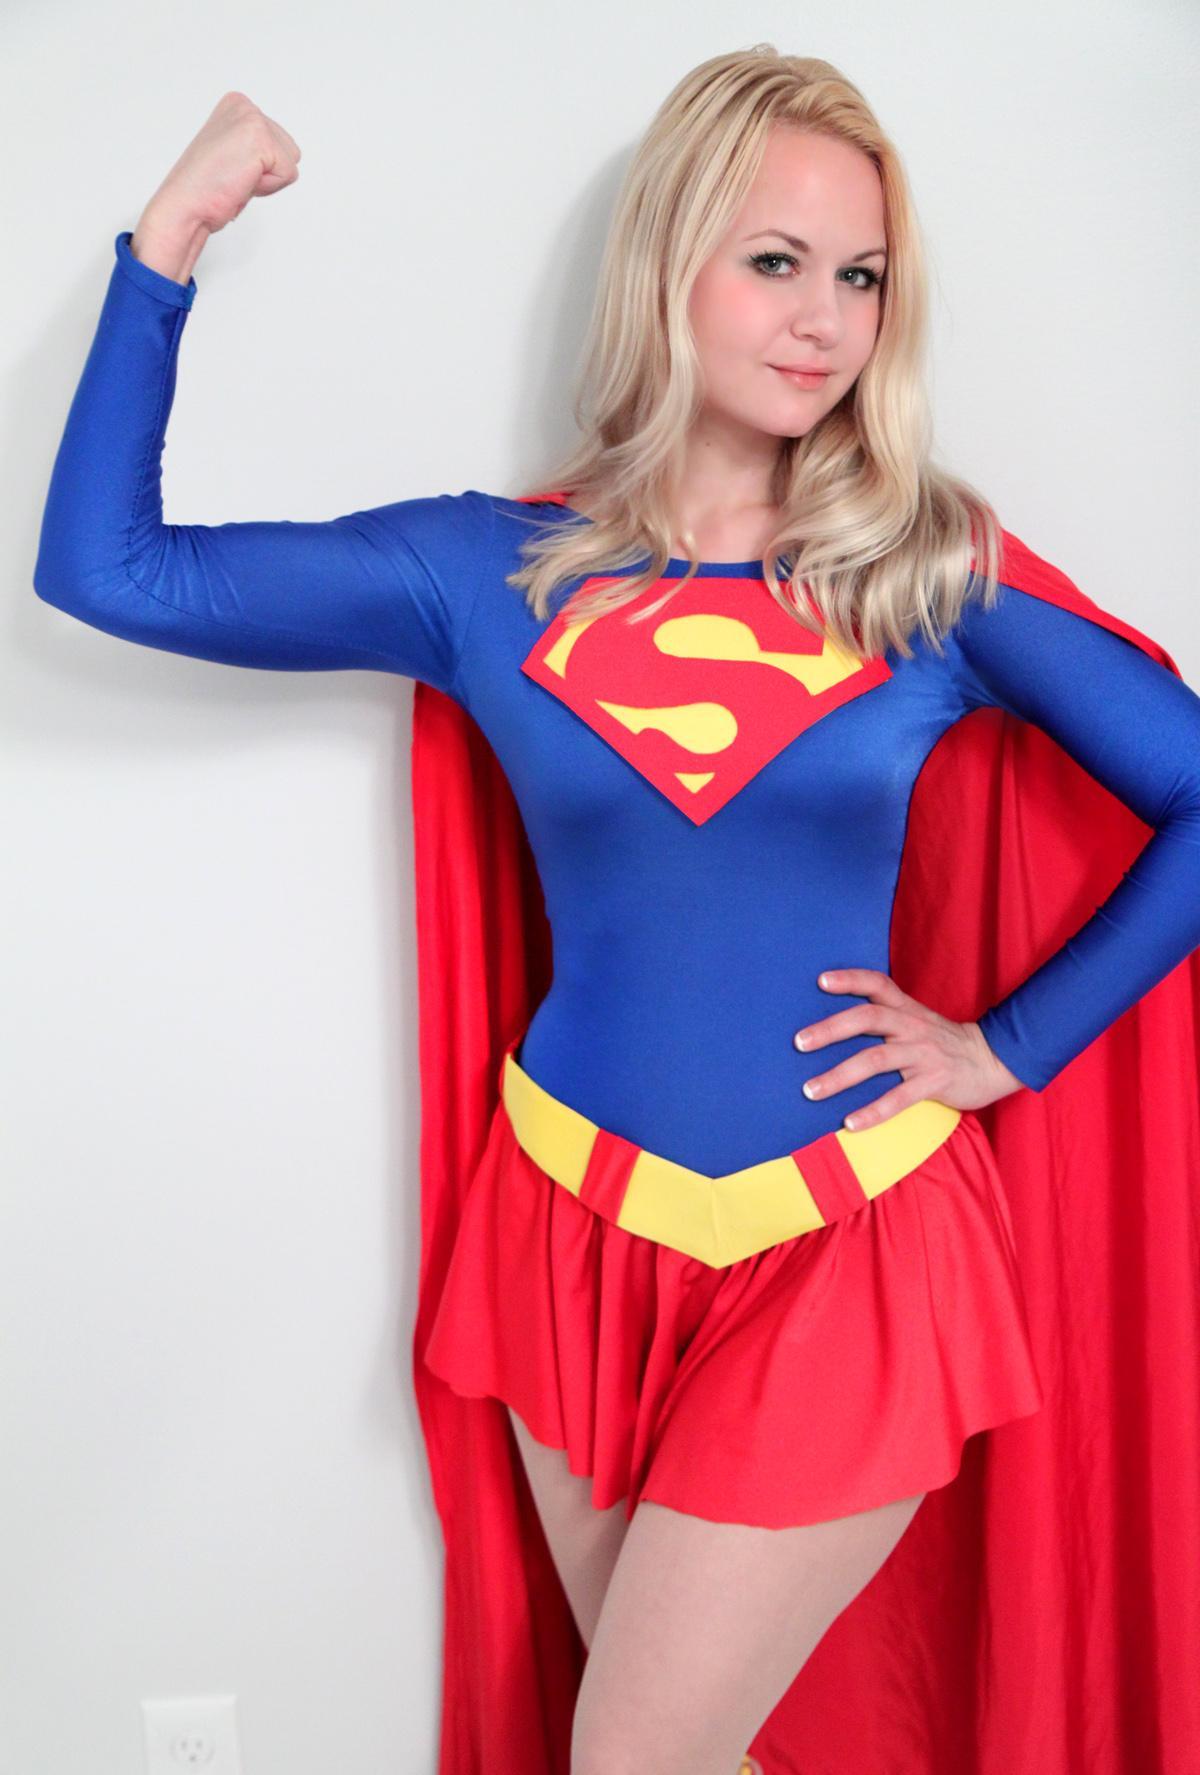 Super Girl - Super Girl (Alisa Kiss) 3